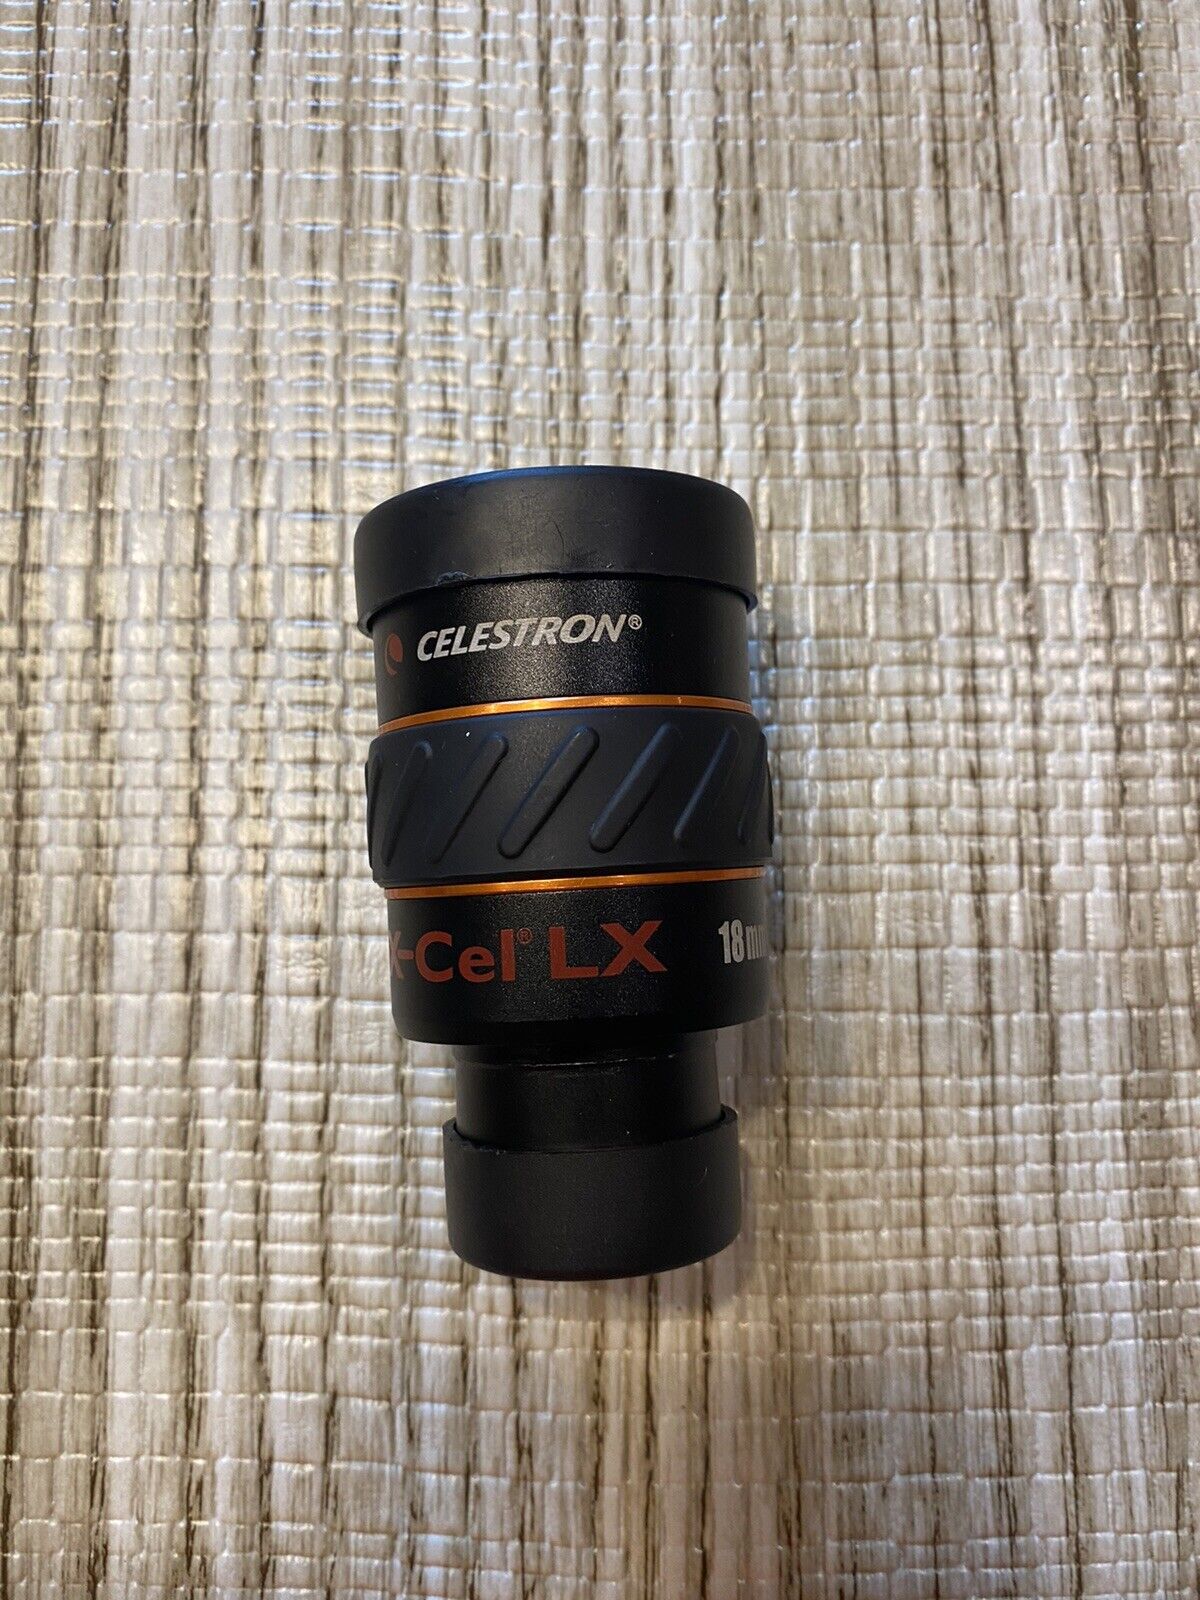 Celestron x-cel lx 18mm Eyepiece